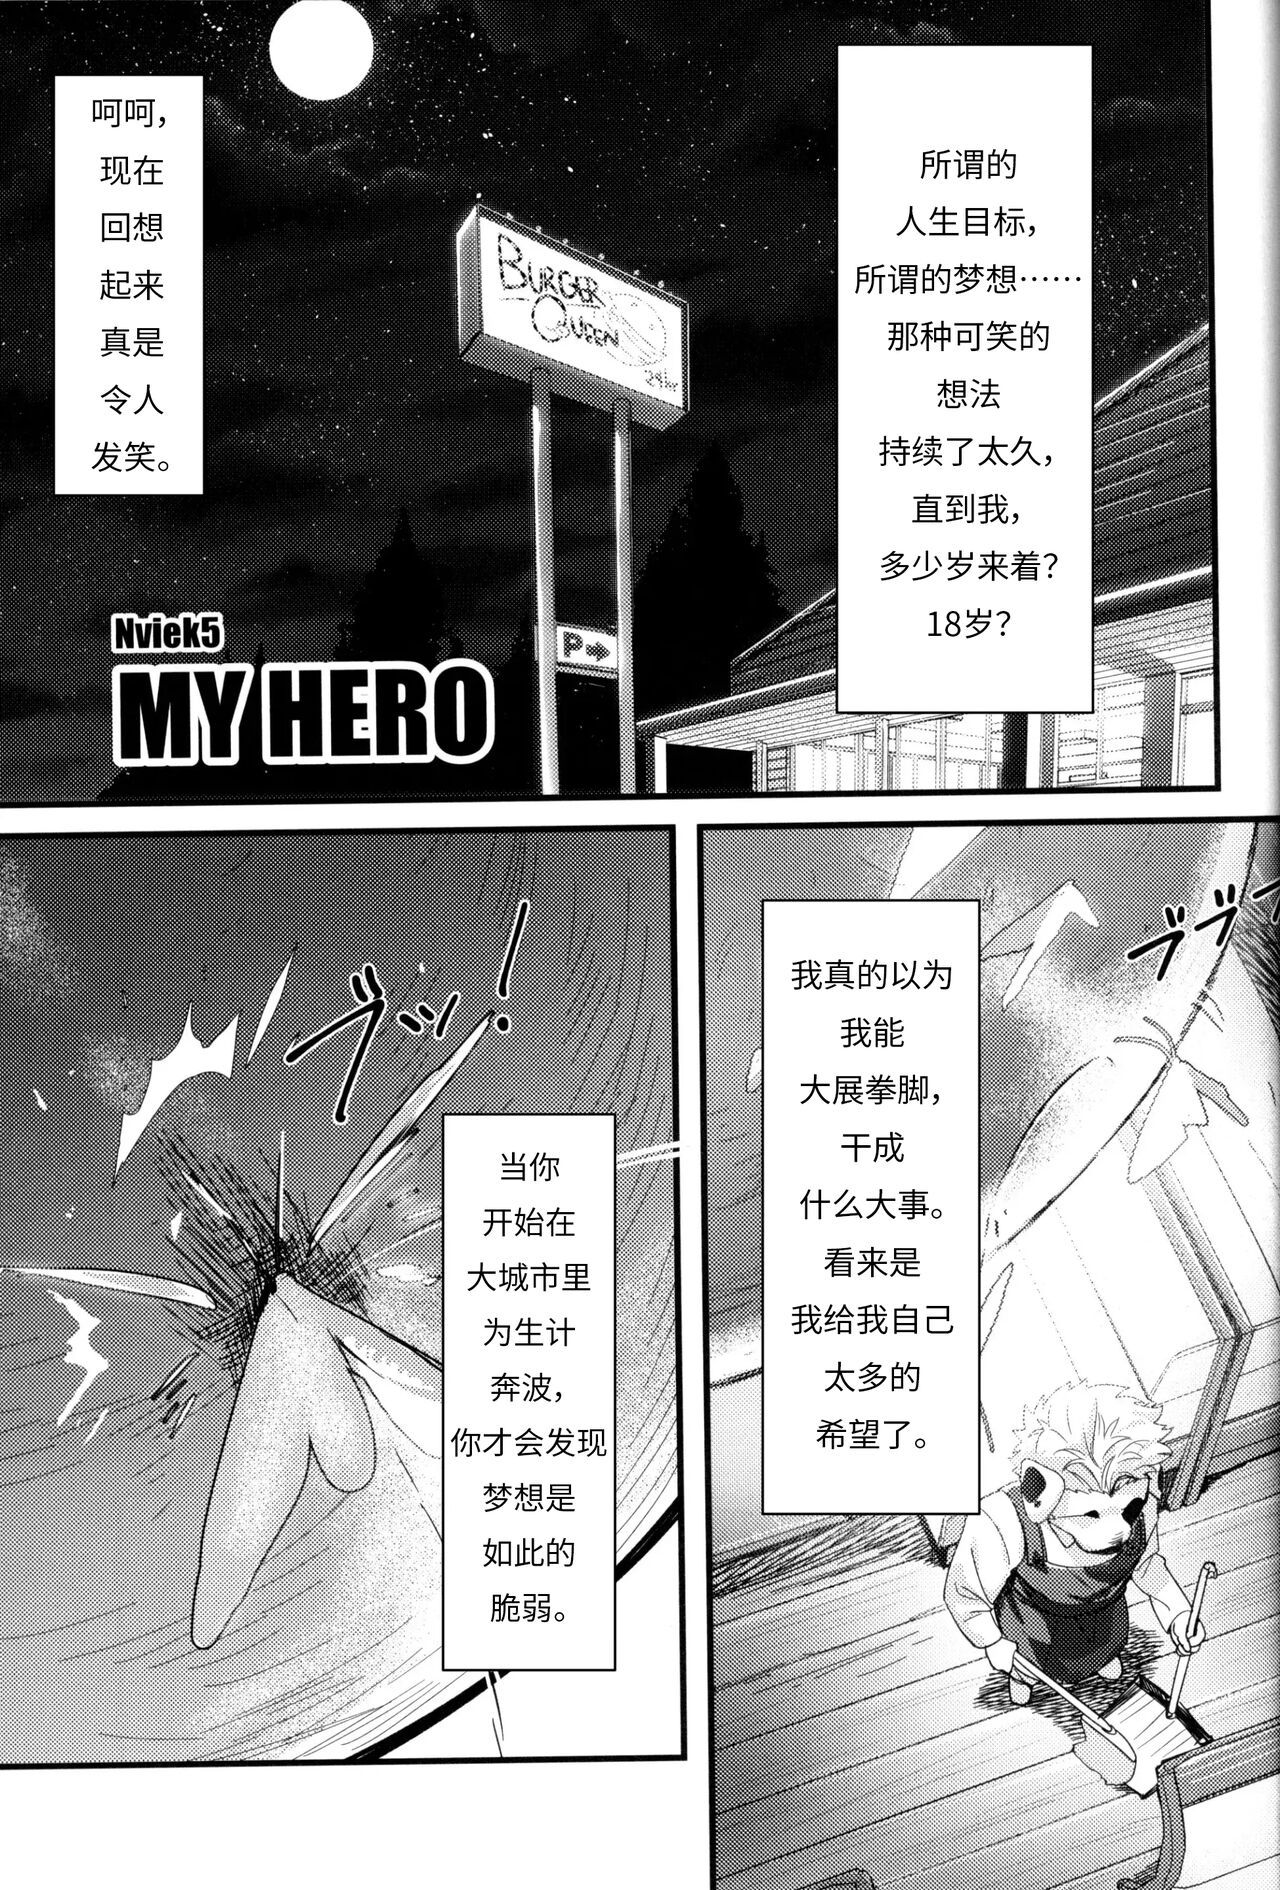 (Kemoket 9.5) [Mitsuwa Building (Nviek5)] MY HERO (Otoko Matsuri Bangaigou featuring TKA) [Chinese] (けもケット9.5) [三輪ビルヂング (Nviek5)] MY HERO (漢祭 番外号 featuring TKA) [中訳]